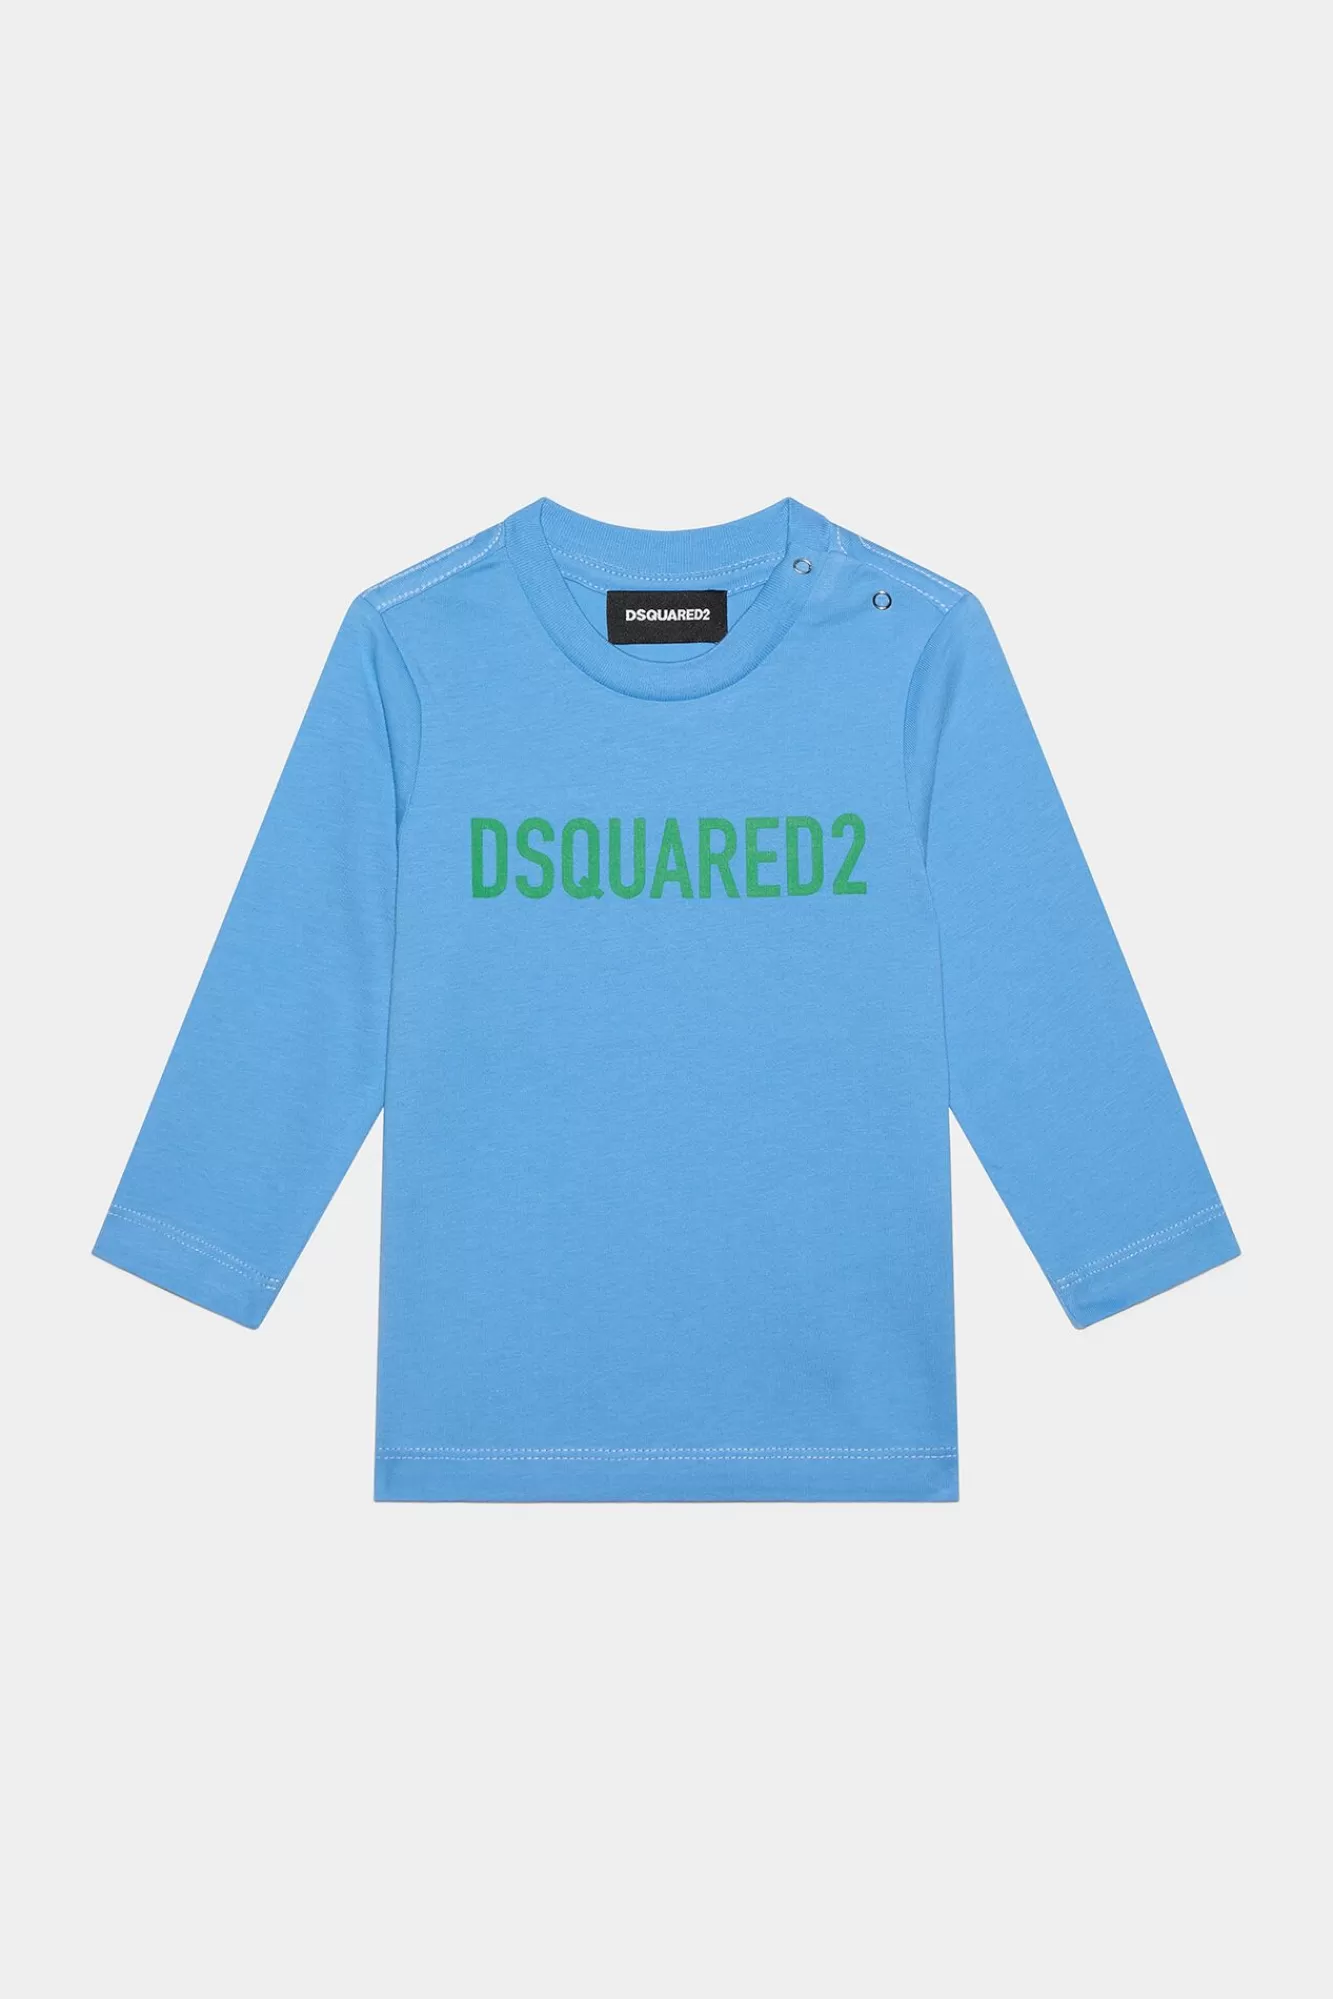 D2Kids New Born Eco T-Shirt<Dsquared2 Best Sale